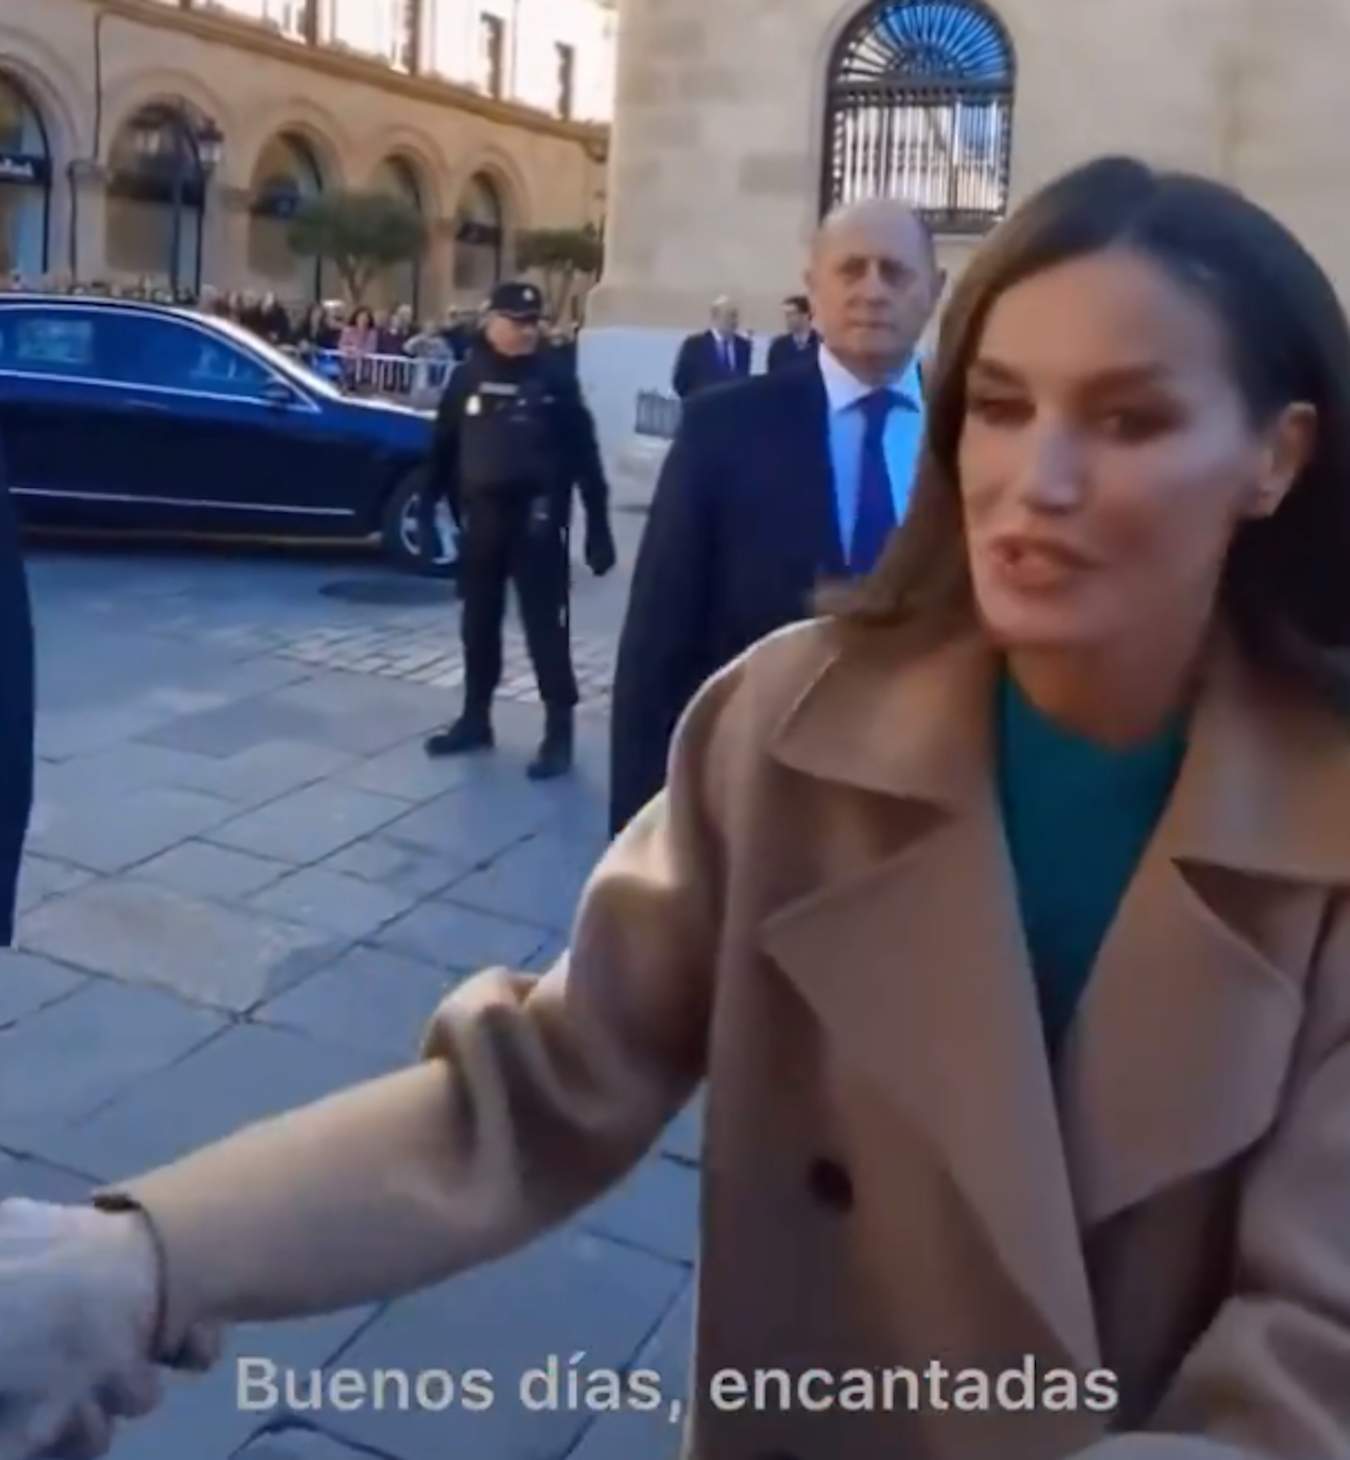 Letizia saluda a unas señoras en Salamanca y la trinchan, qué dicen de ella